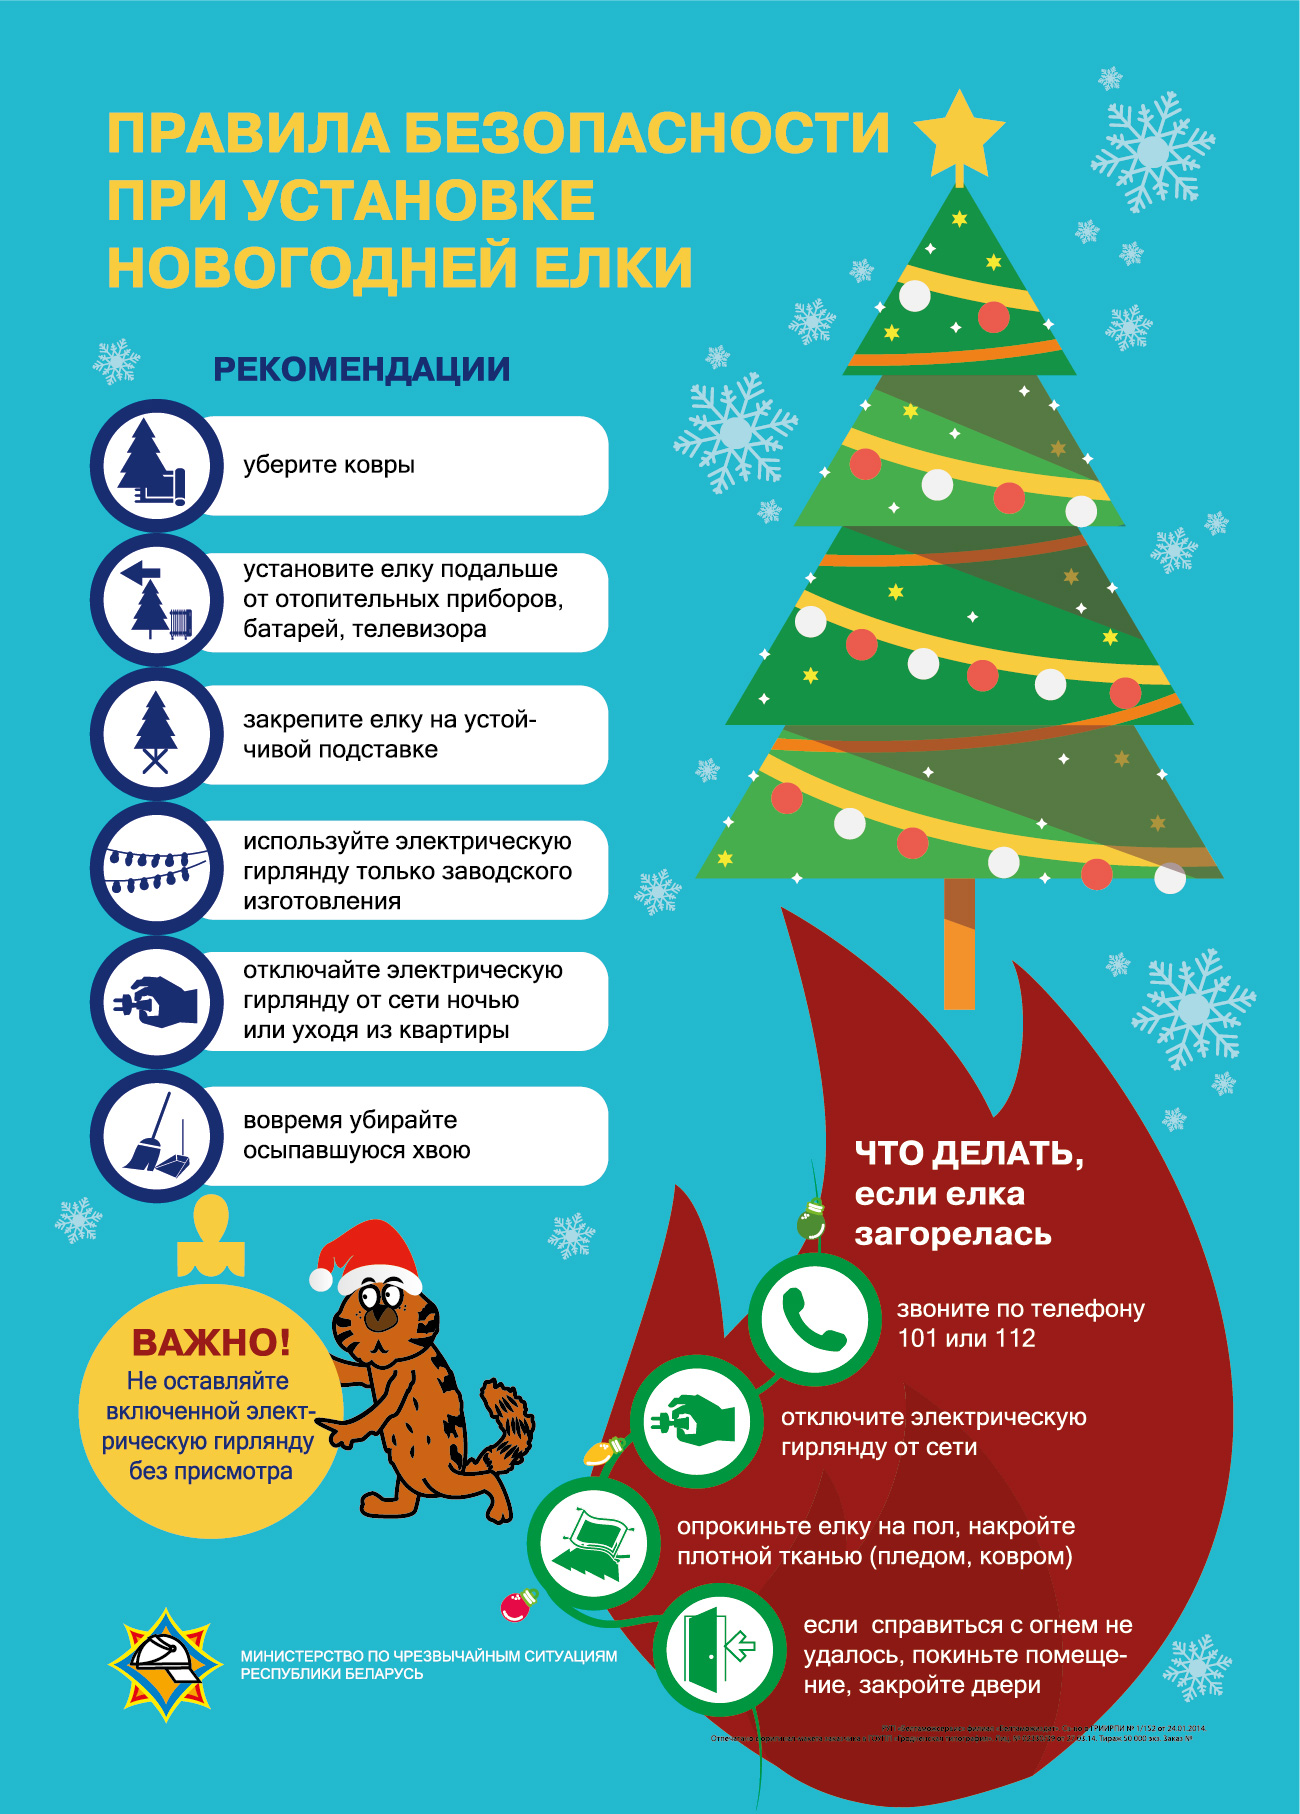 Правила безопасности при установке новогодней елки и использовании пиротехники